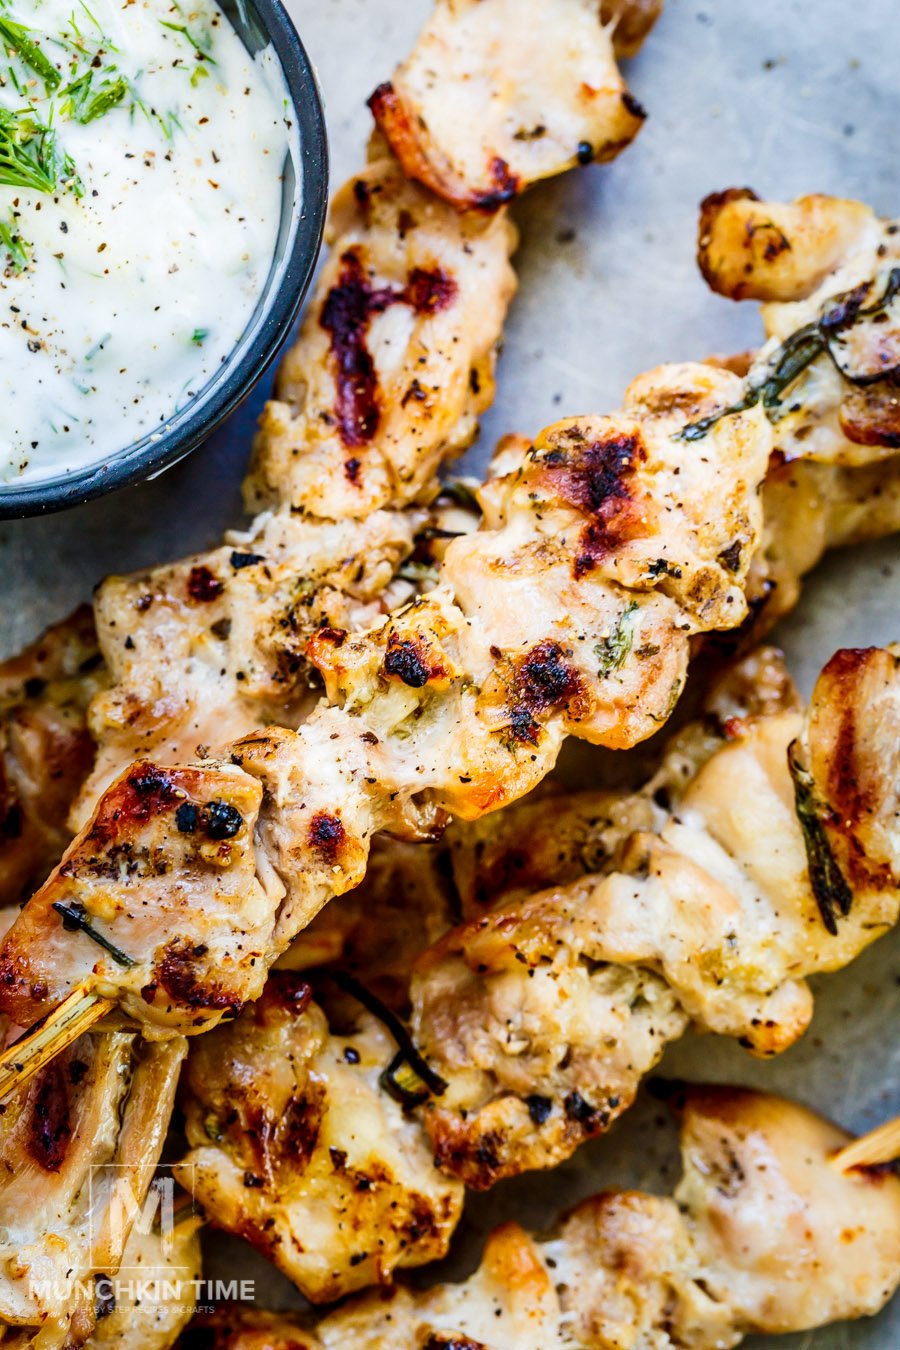 Best Chicken Thigh Marinade - Greek Shish Kabobs Recipe 